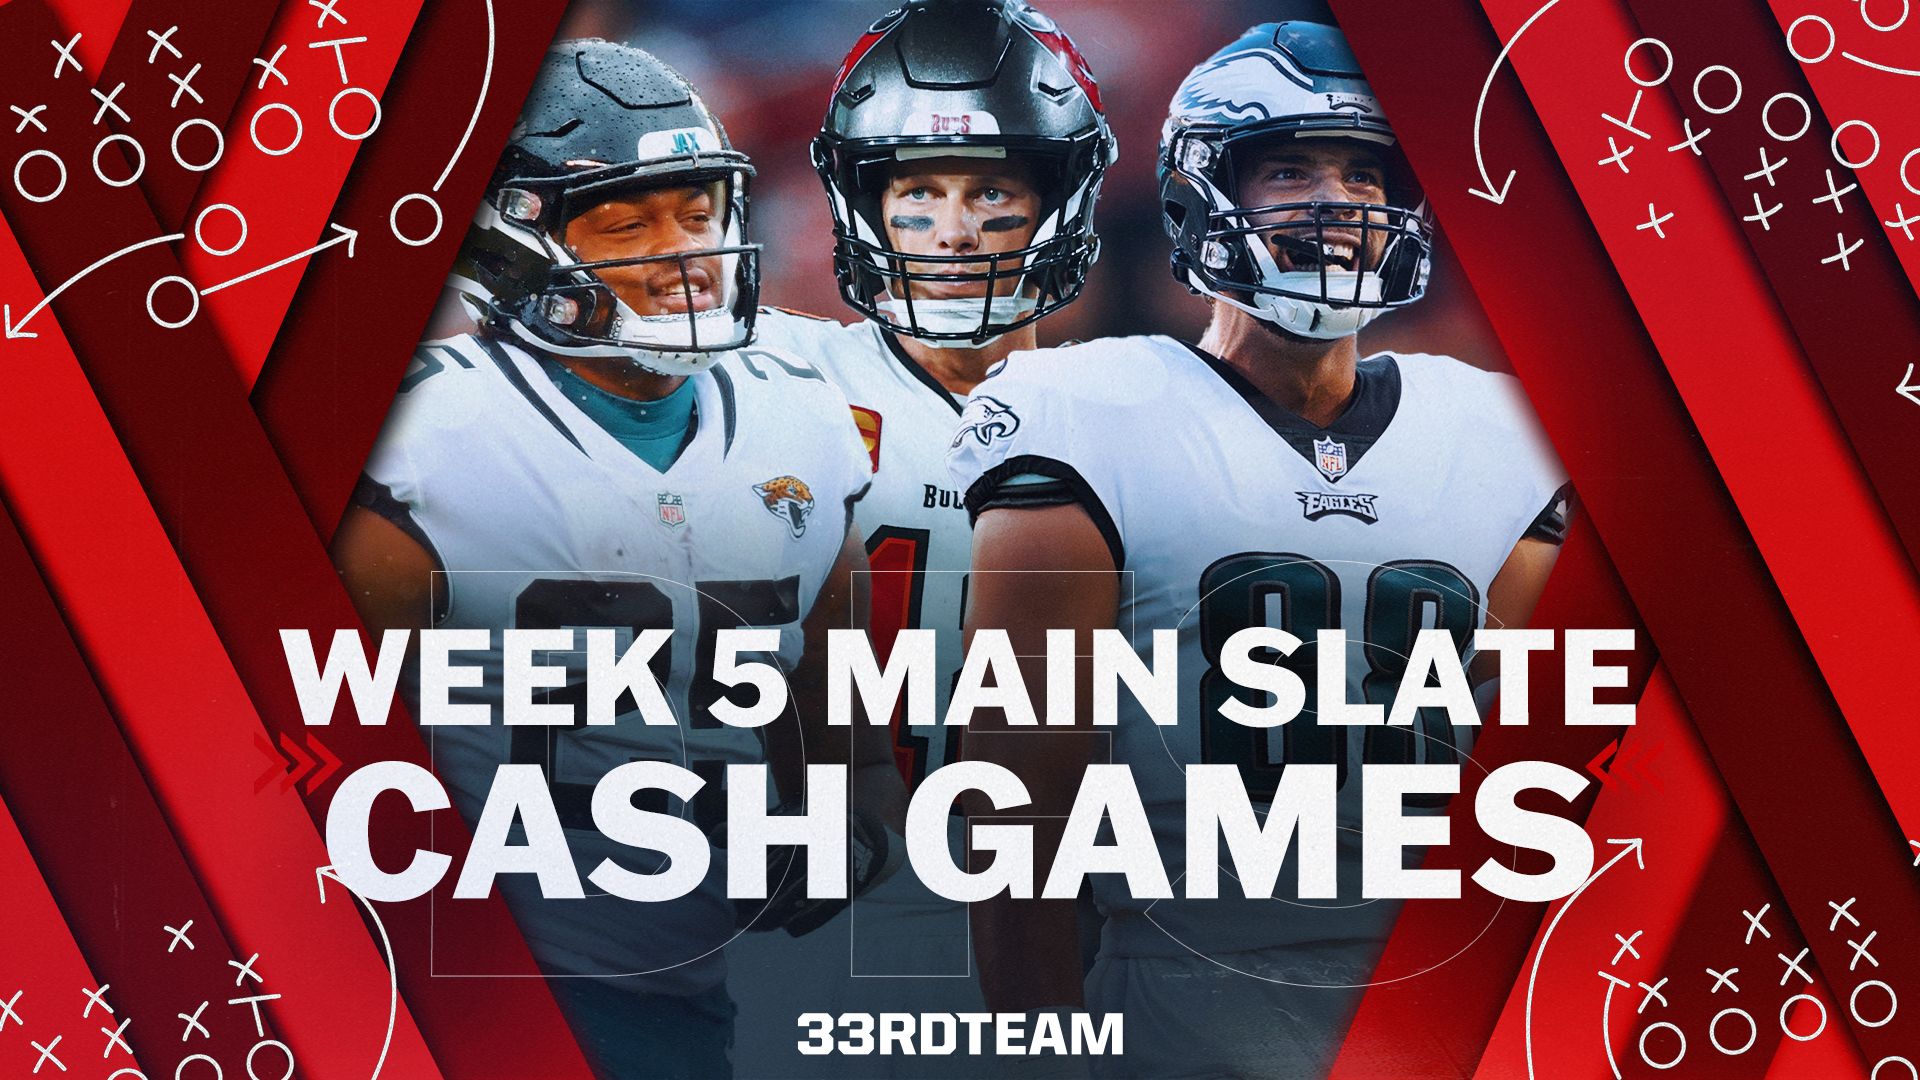 Week 5 Main Slate Cash games